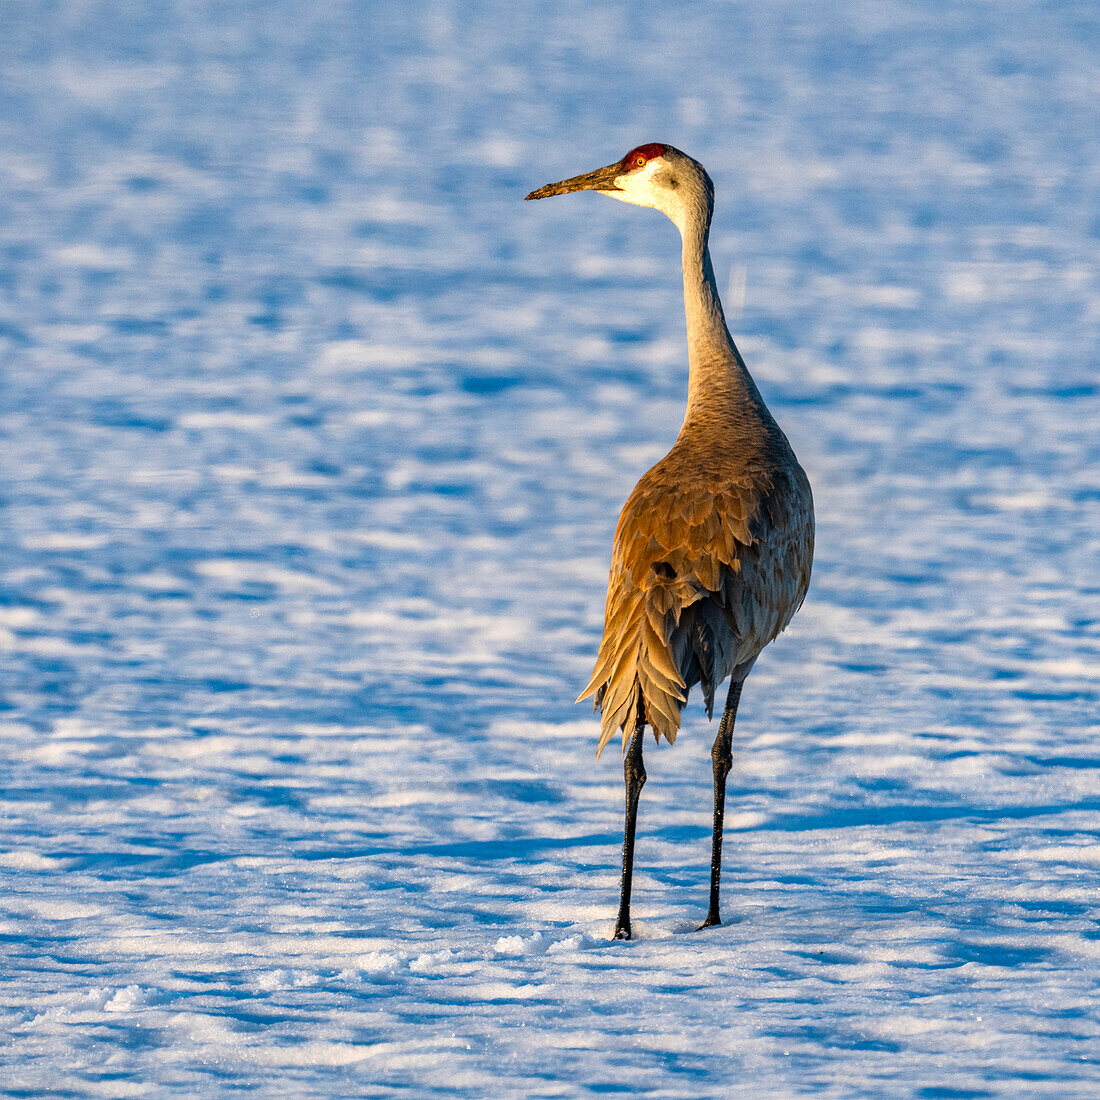 USA, Idaho, Bellevue, Crane standing in snow 